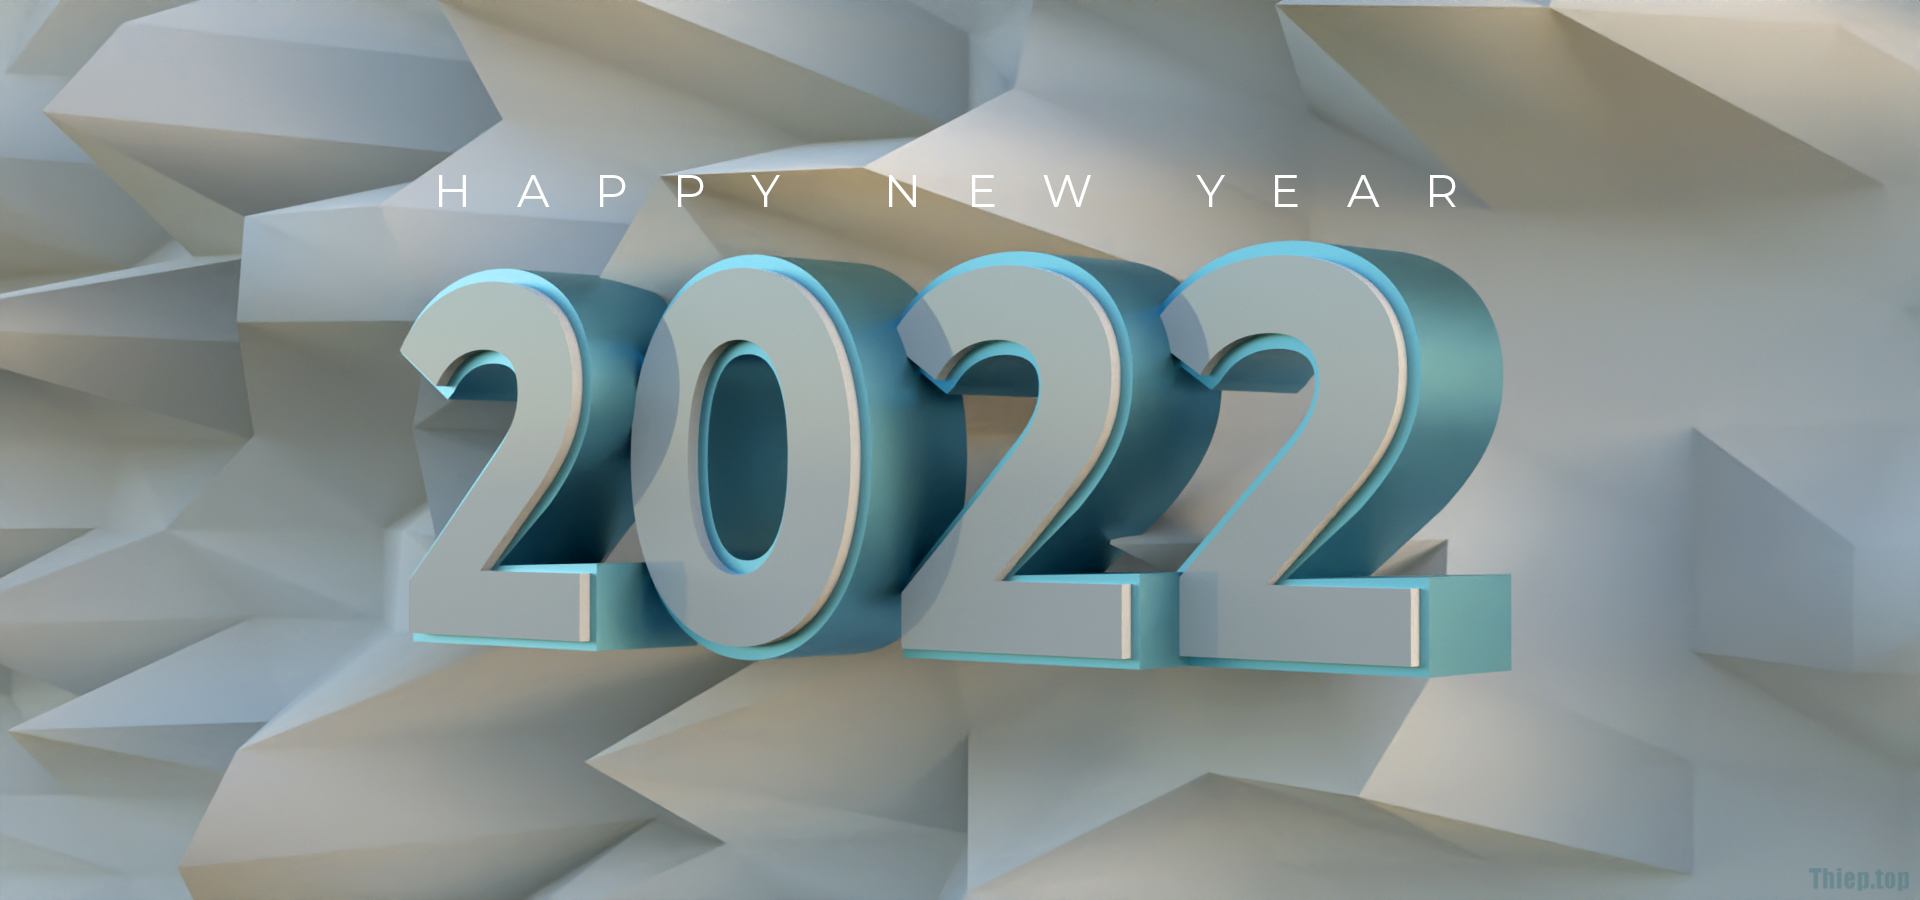 Top Hình nền chúc mừng năm mới 2022 Full HD Tải miễn phí - Hình 4